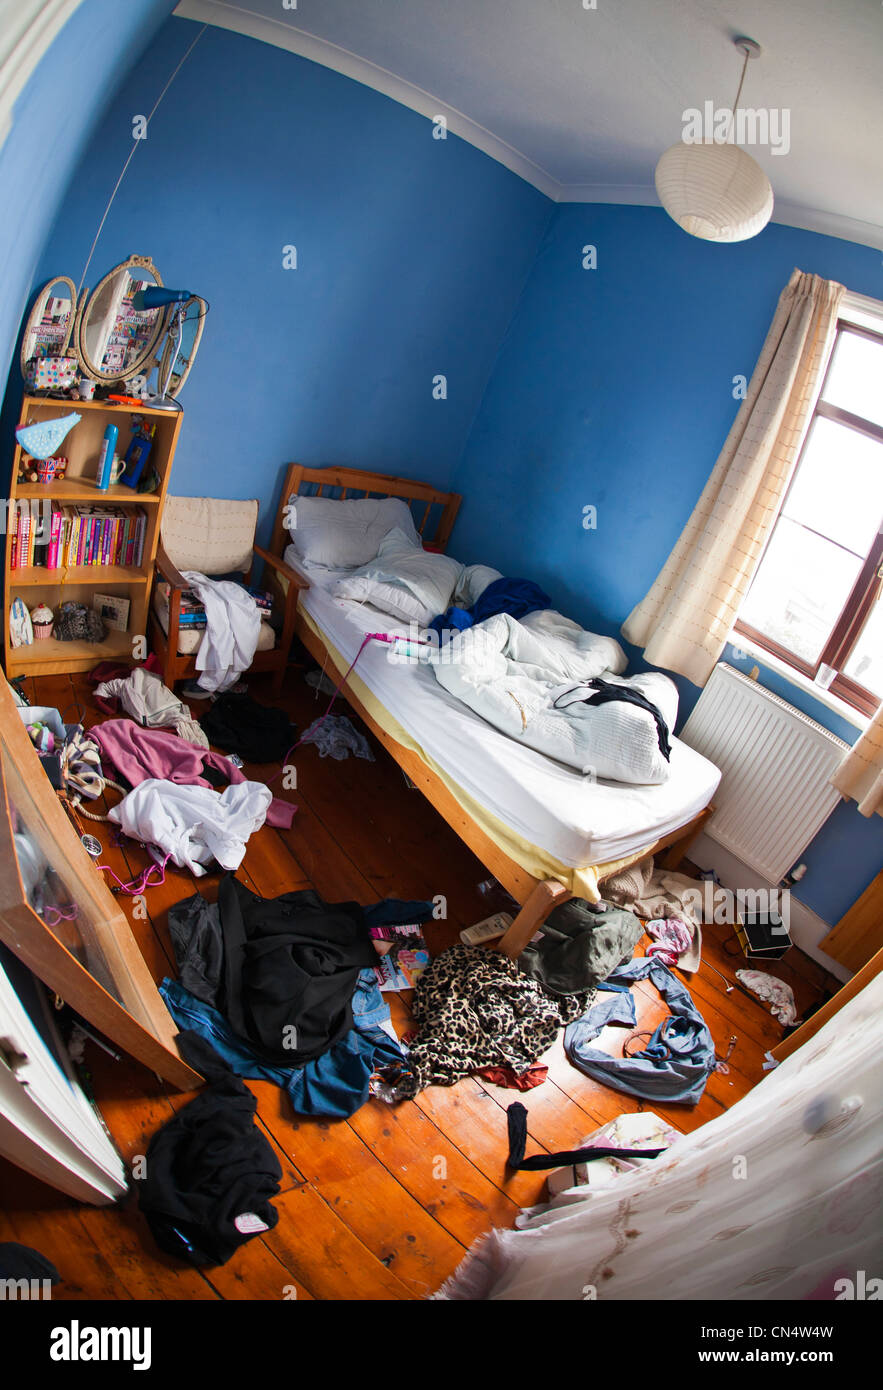 El desordenado, desorden en el dormitorio de un adolescente. Foto de stock